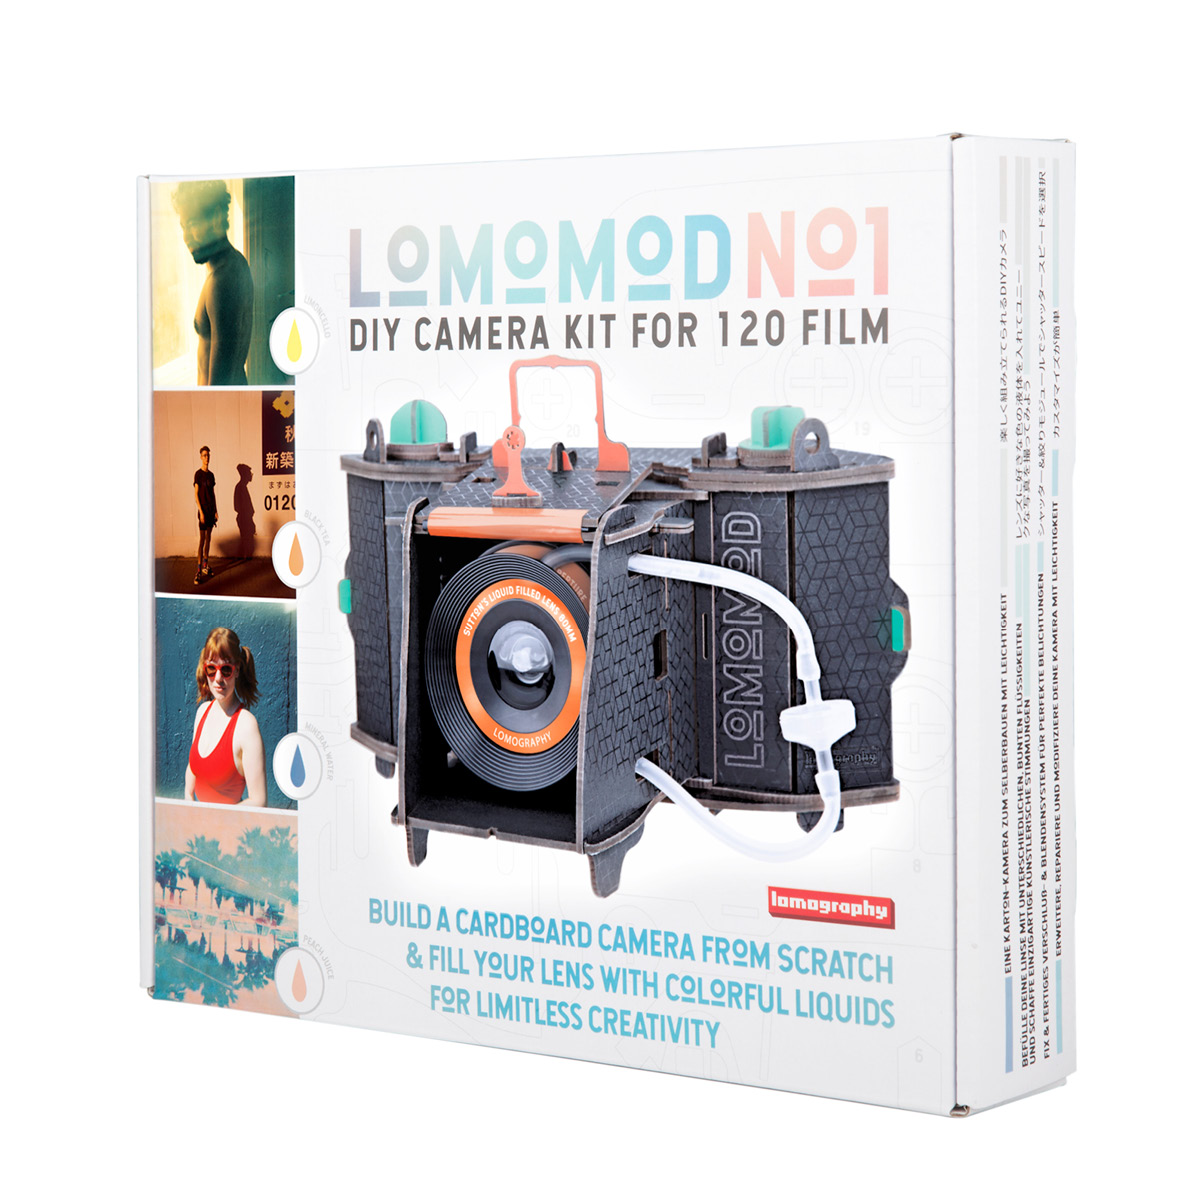 LomoMod No. 1